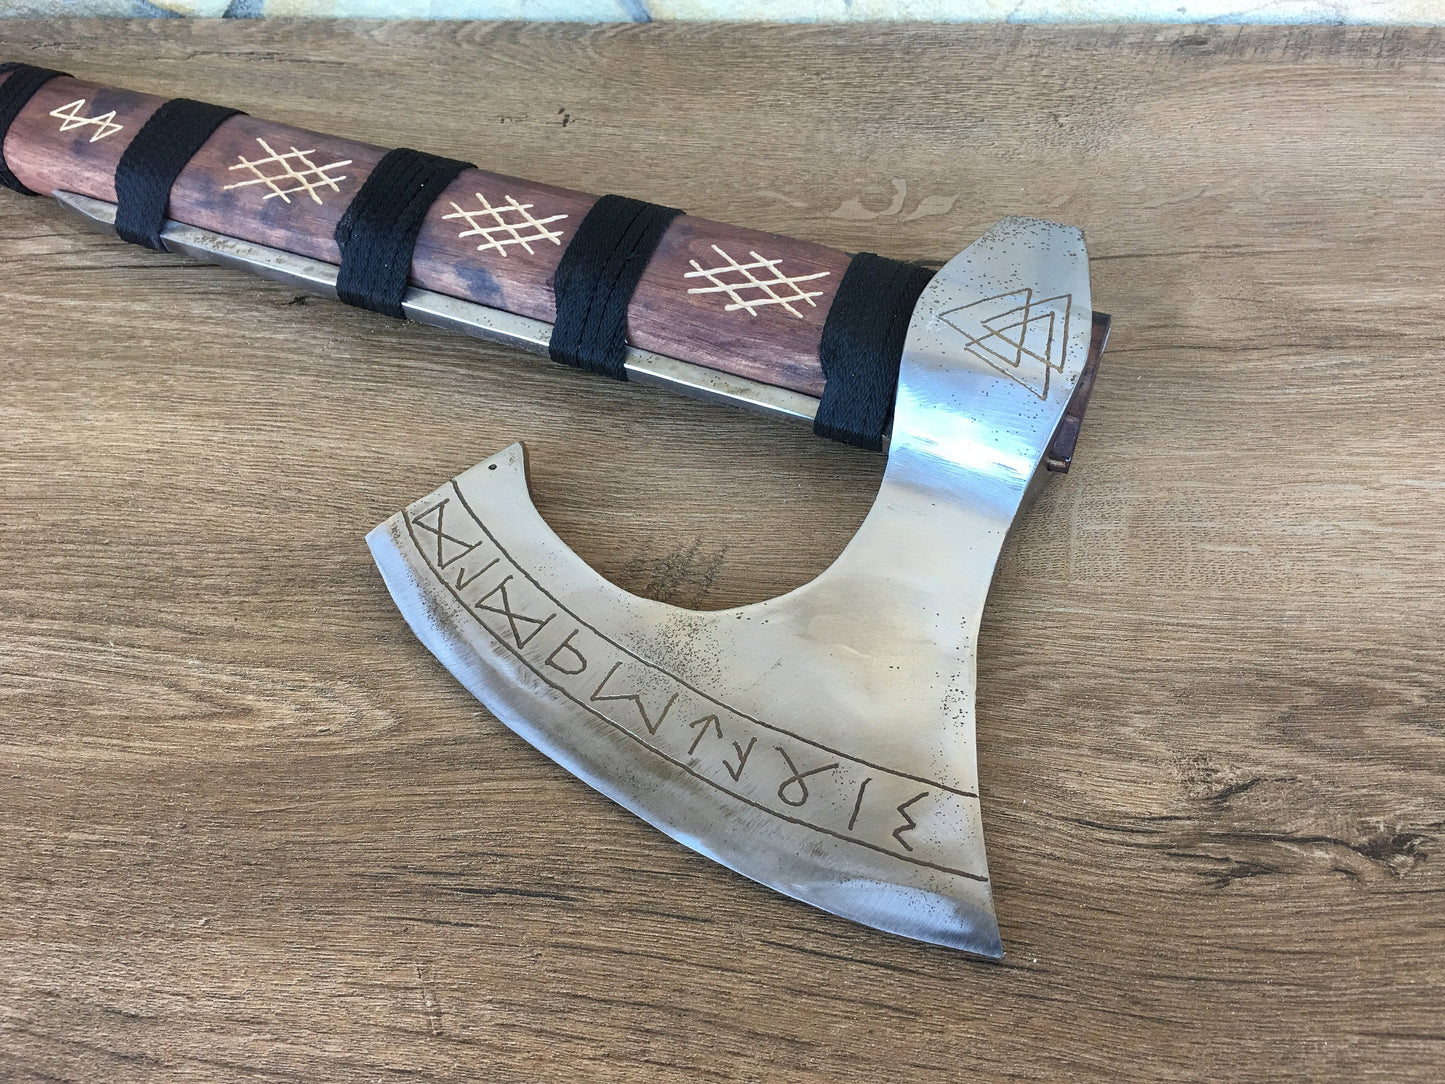 Perun axe, pagan axe, viking axe, Ragnar, Dane axe, The Raider, Great Dane Axe, bearded axe, Norse axe, berserker axe, mjolnir,viking weapon